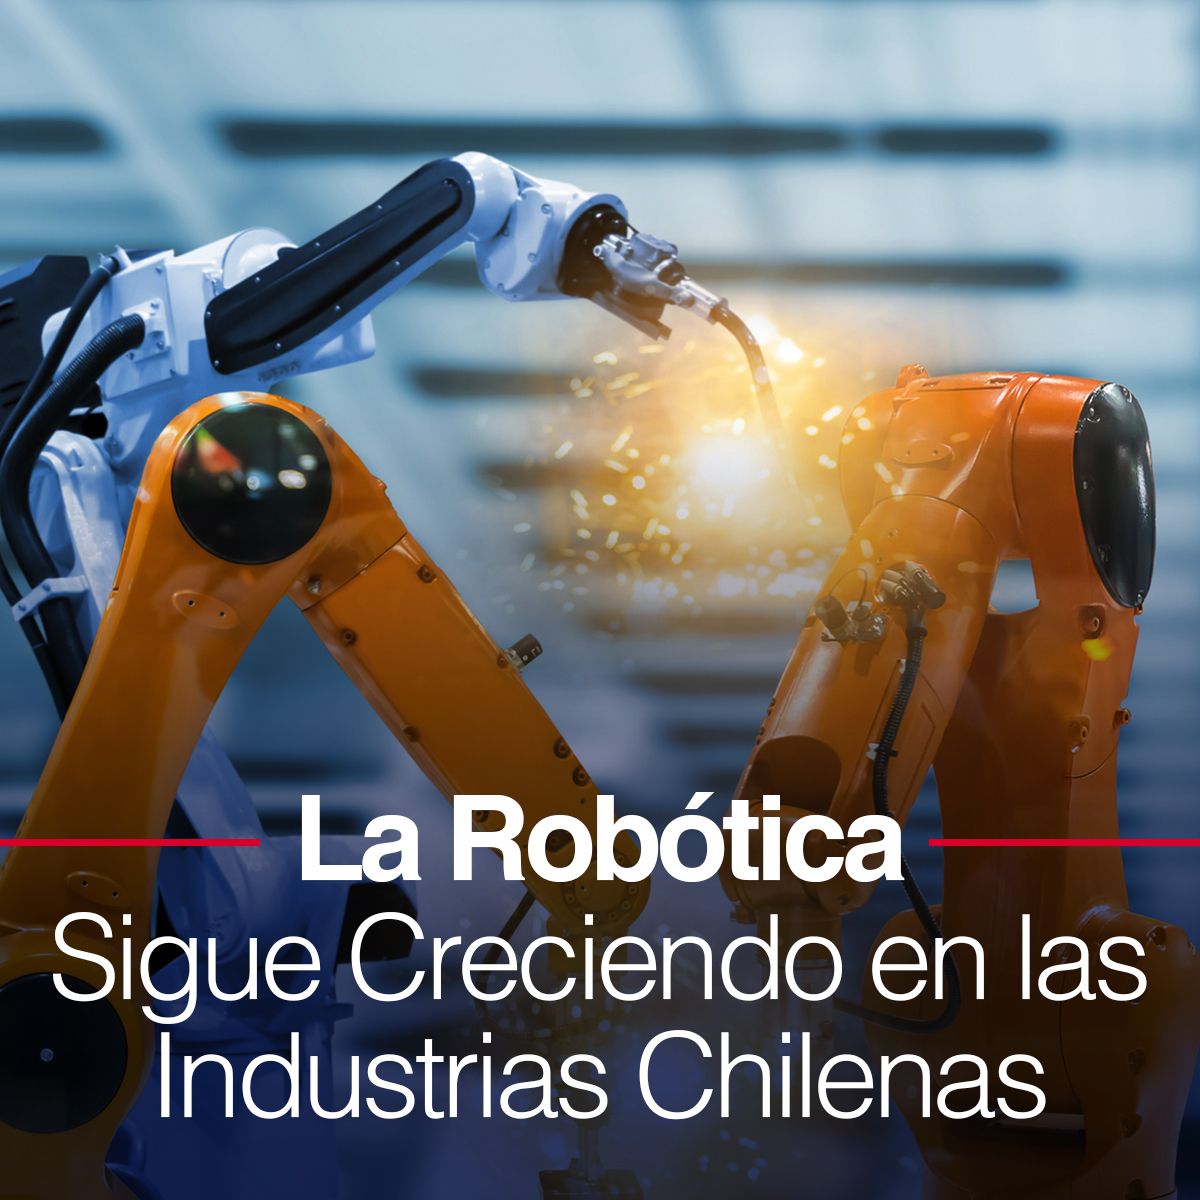 La Robótica Sigue Creciendo en las Industrias Chilenas